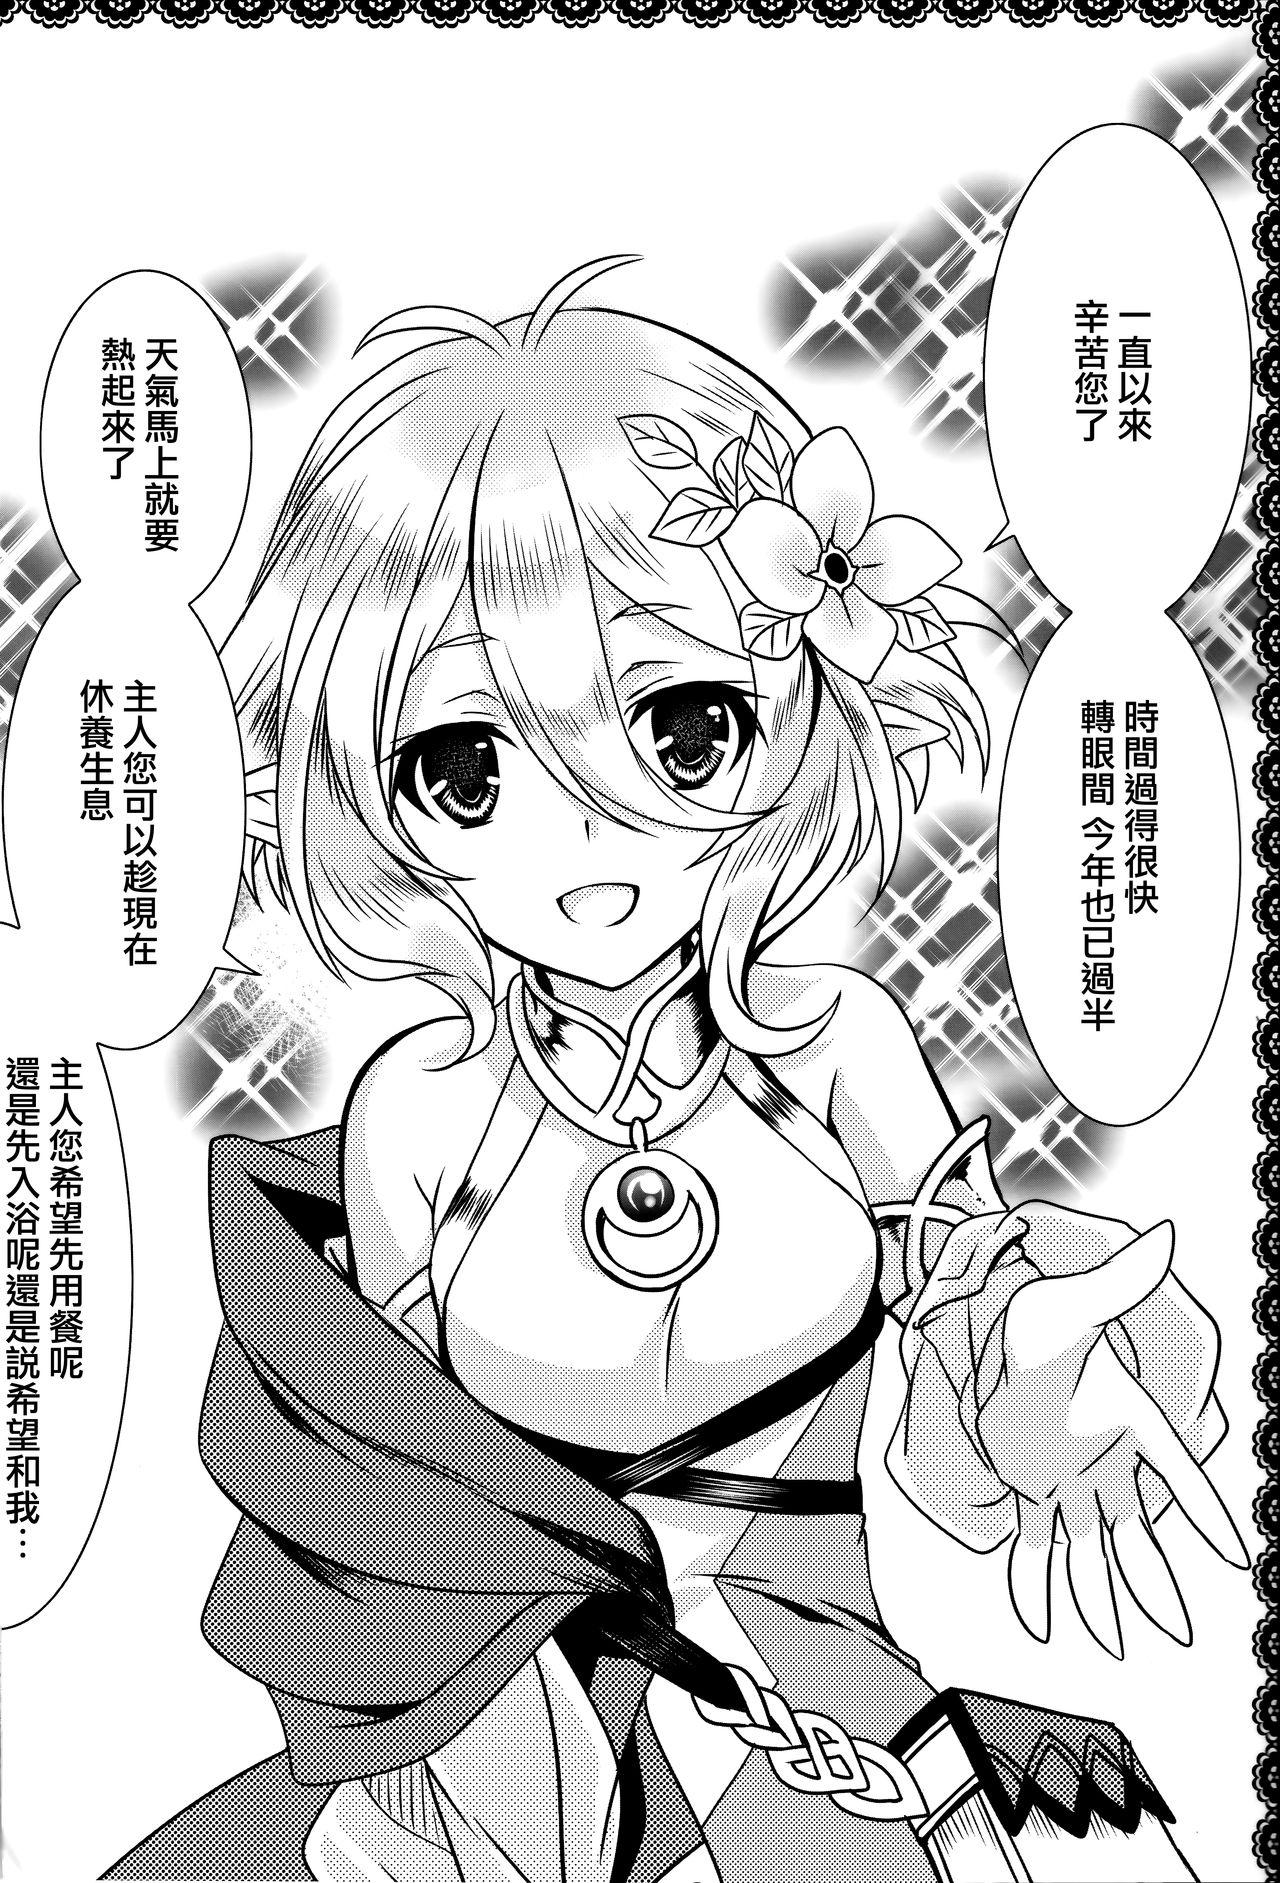 Mms Aruji-sama ni Naisho no Memory Piece - Princess connect Retro - Page 3